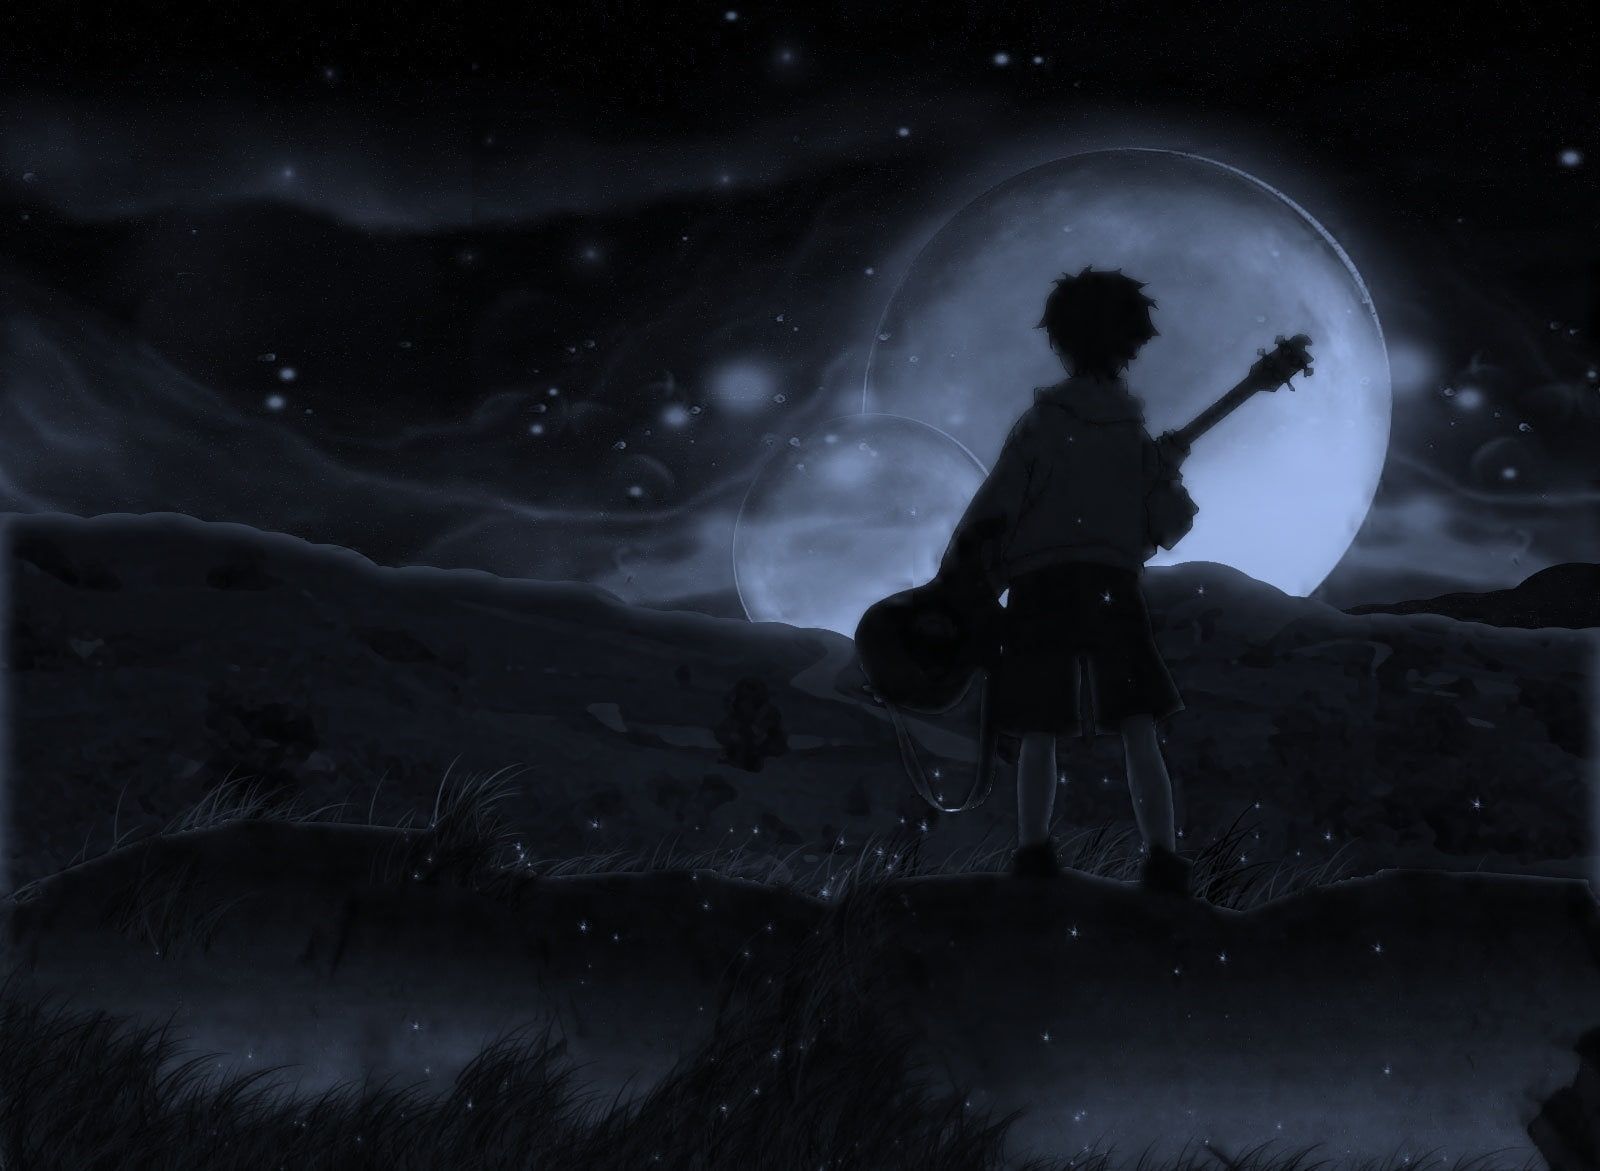 Moon #FLCL #dark #anime P #wallpaper #hdwallpaper #desktop. Anime background wallpaper, Anime wallpaper, Flcl